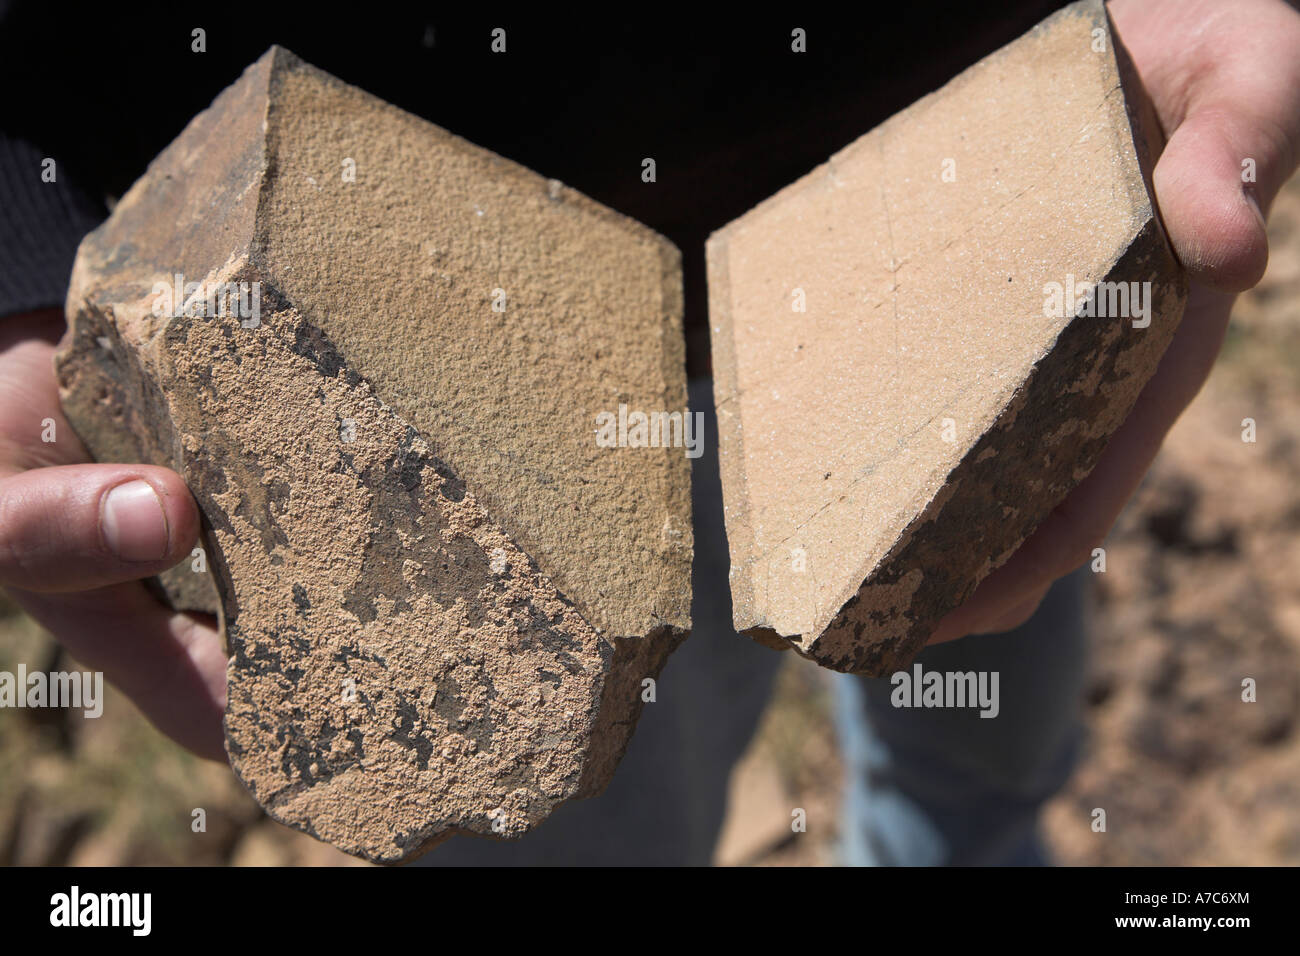 Stone brisé en deux par l'altération du désert qui a eu lieu entre les mains d'une personne dans un désert du Sahara Maroc Banque D'Images